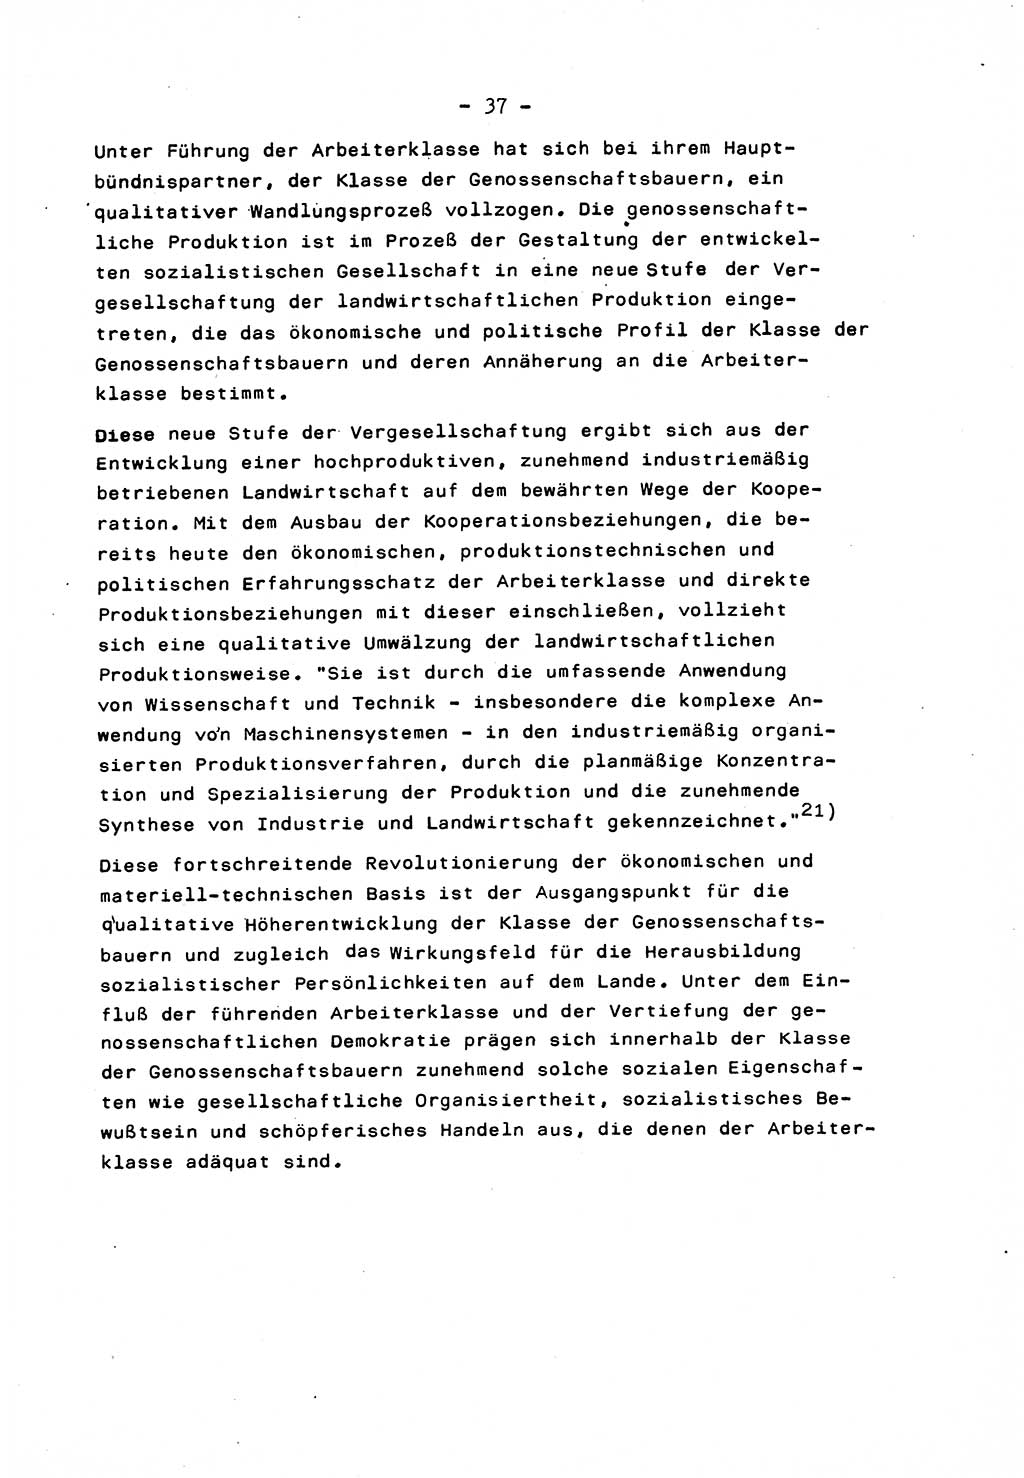 Marxistisch-leninistische Staats- und Rechtstheorie [Deutsche Demokratische Republik (DDR)] 1975, Seite 37 (ML St.-R.-Th. DDR 1975, S. 37)